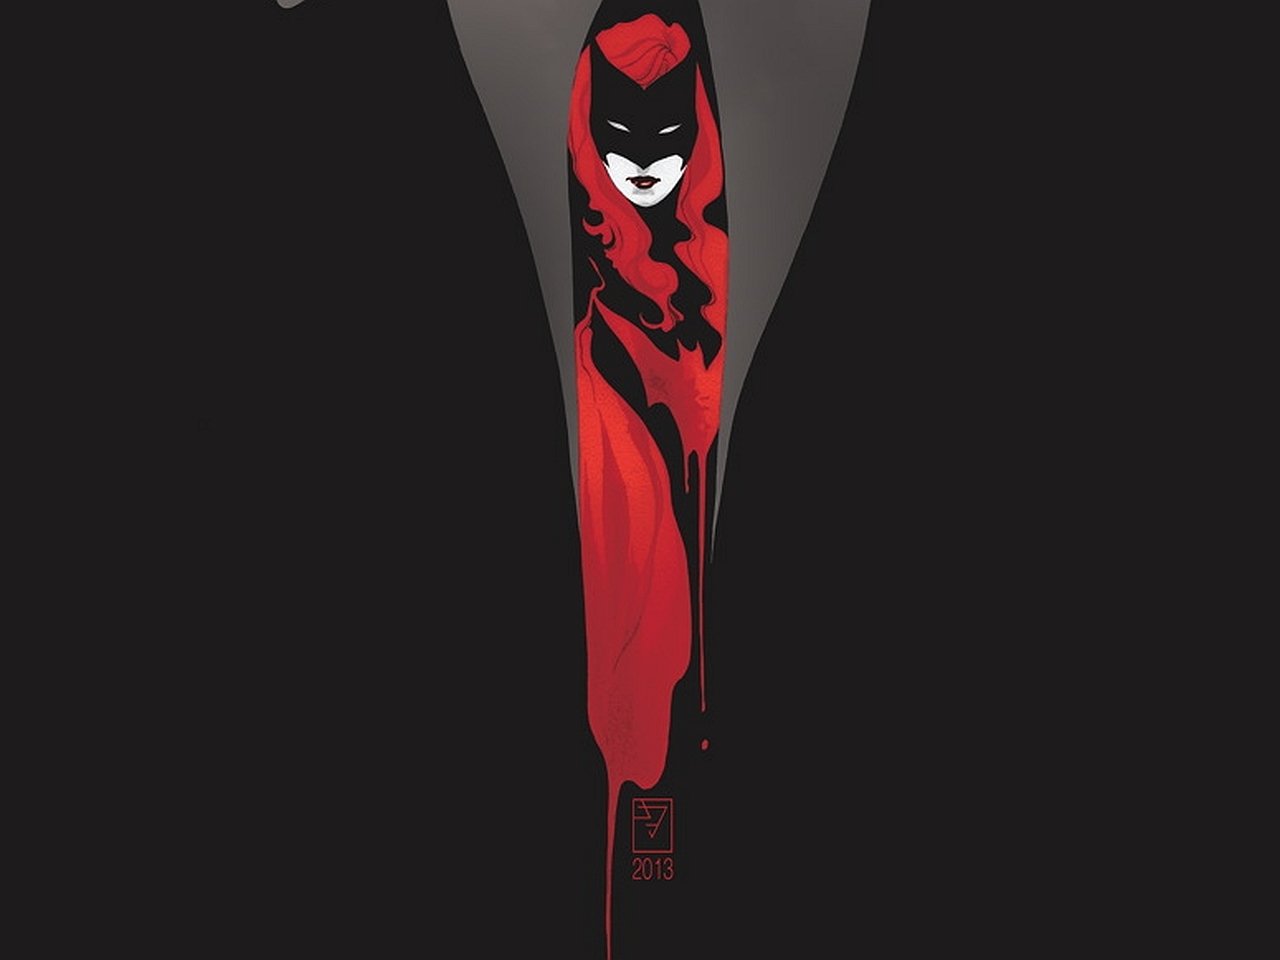 Batwoman wallpaper